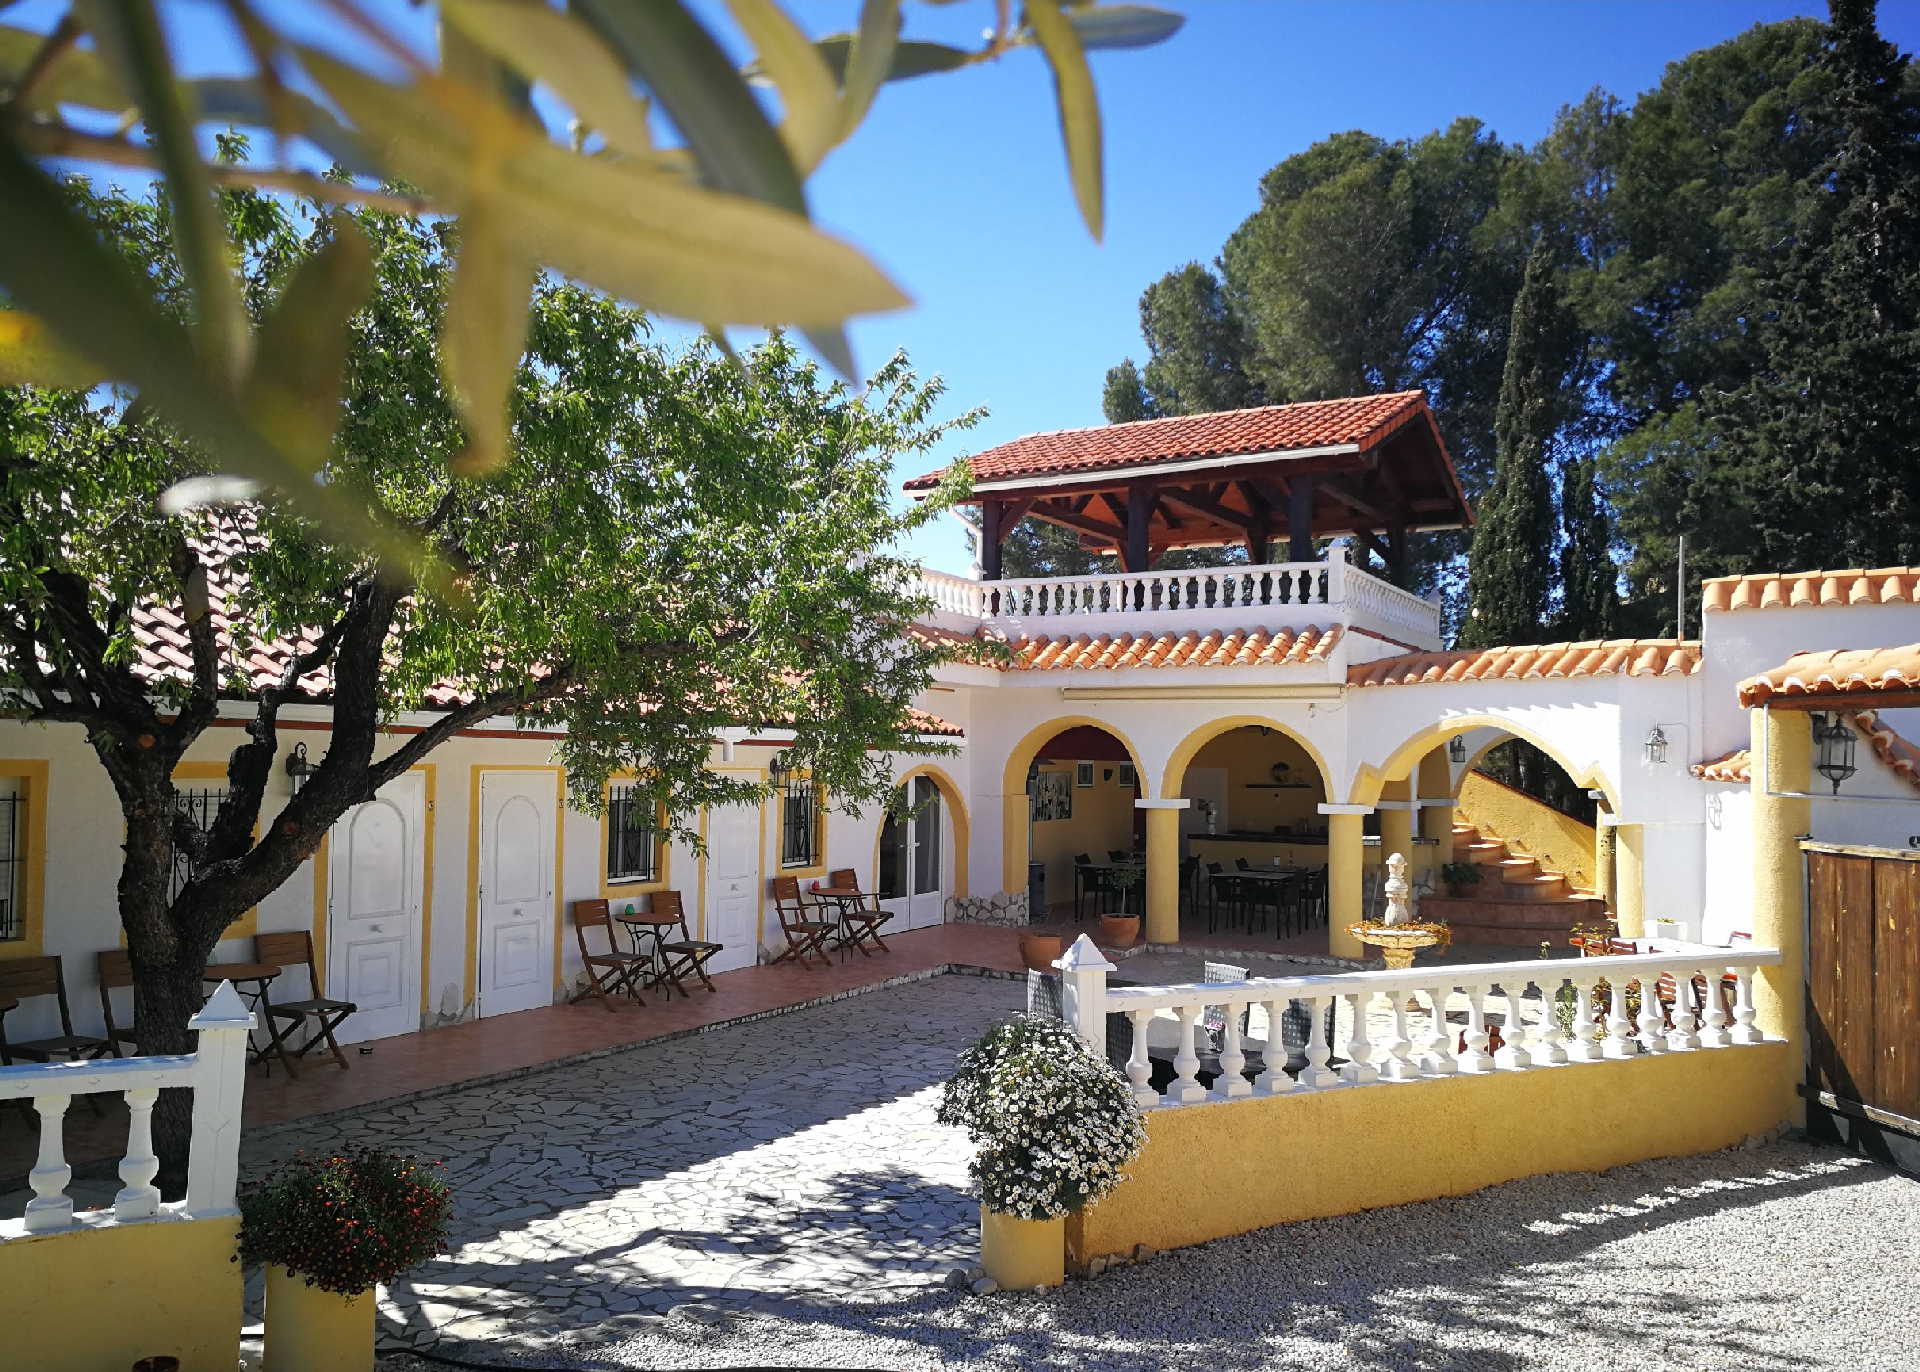 Ferienhaus mit Privatpool für 8 Personen  + 2 Ferienhaus in Spanien